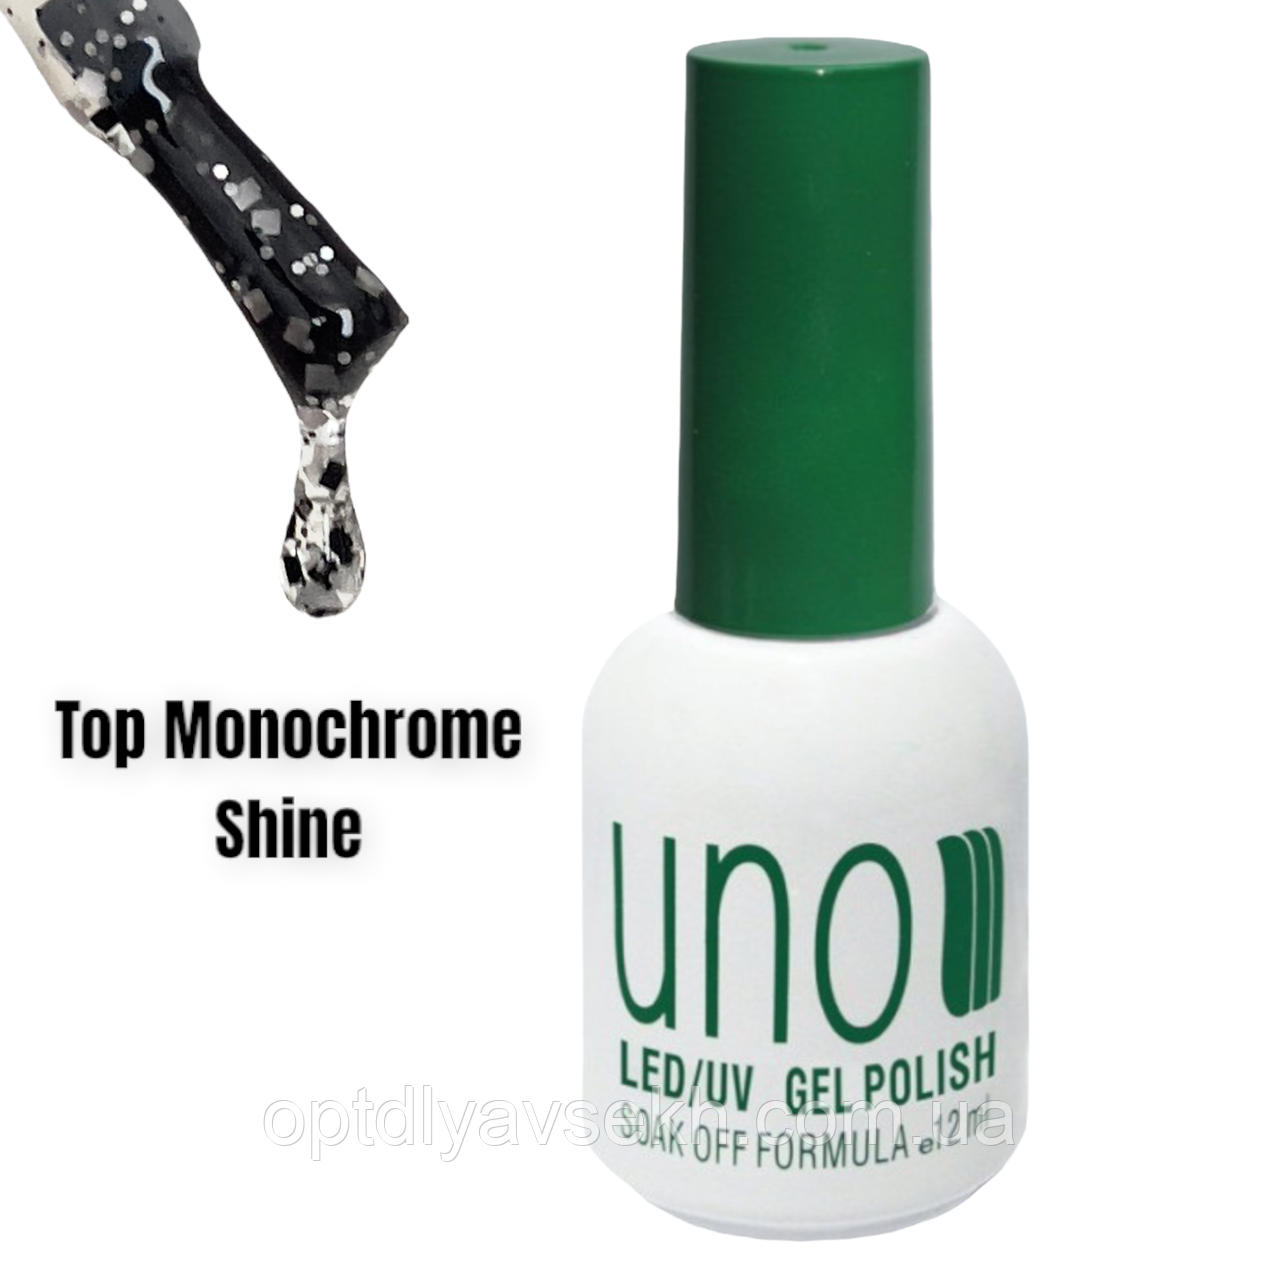 Блискуче топове покриття для нігтів із срібними та чорними частинками Top Monochrome Shine 12 ml.